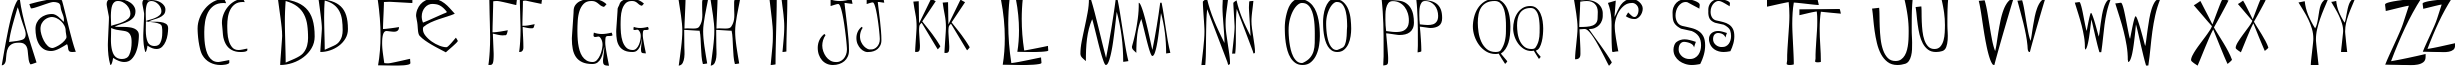 Пример написания английского алфавита шрифтом Flowerchild